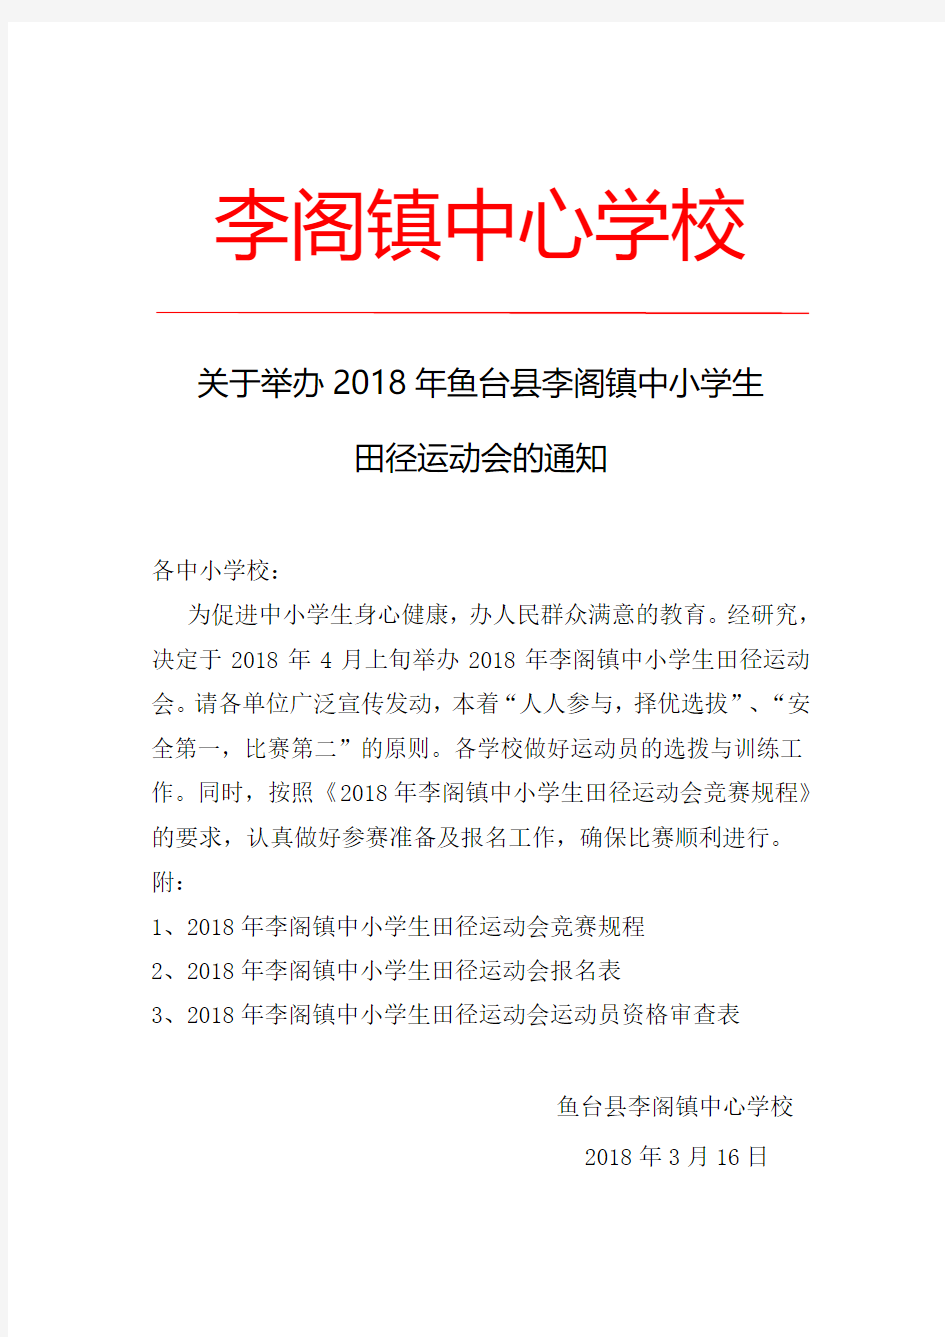 关于举办2018年鱼台县李阁镇中小学生田径运动会的通知